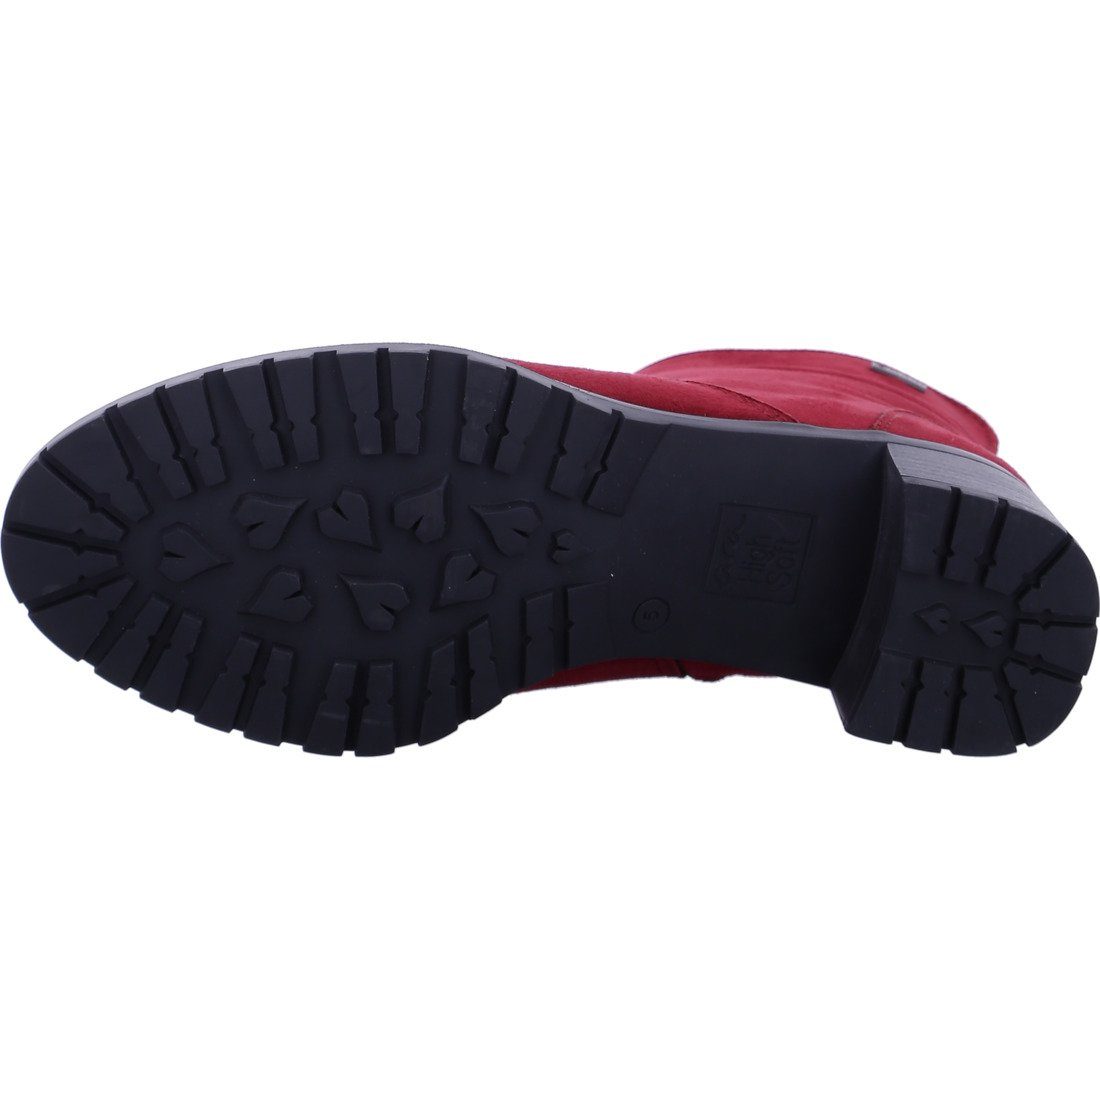 Schuhe, Textil rot - Ara Stiefelette Ronda Damen Stiefelette 049770 Ara